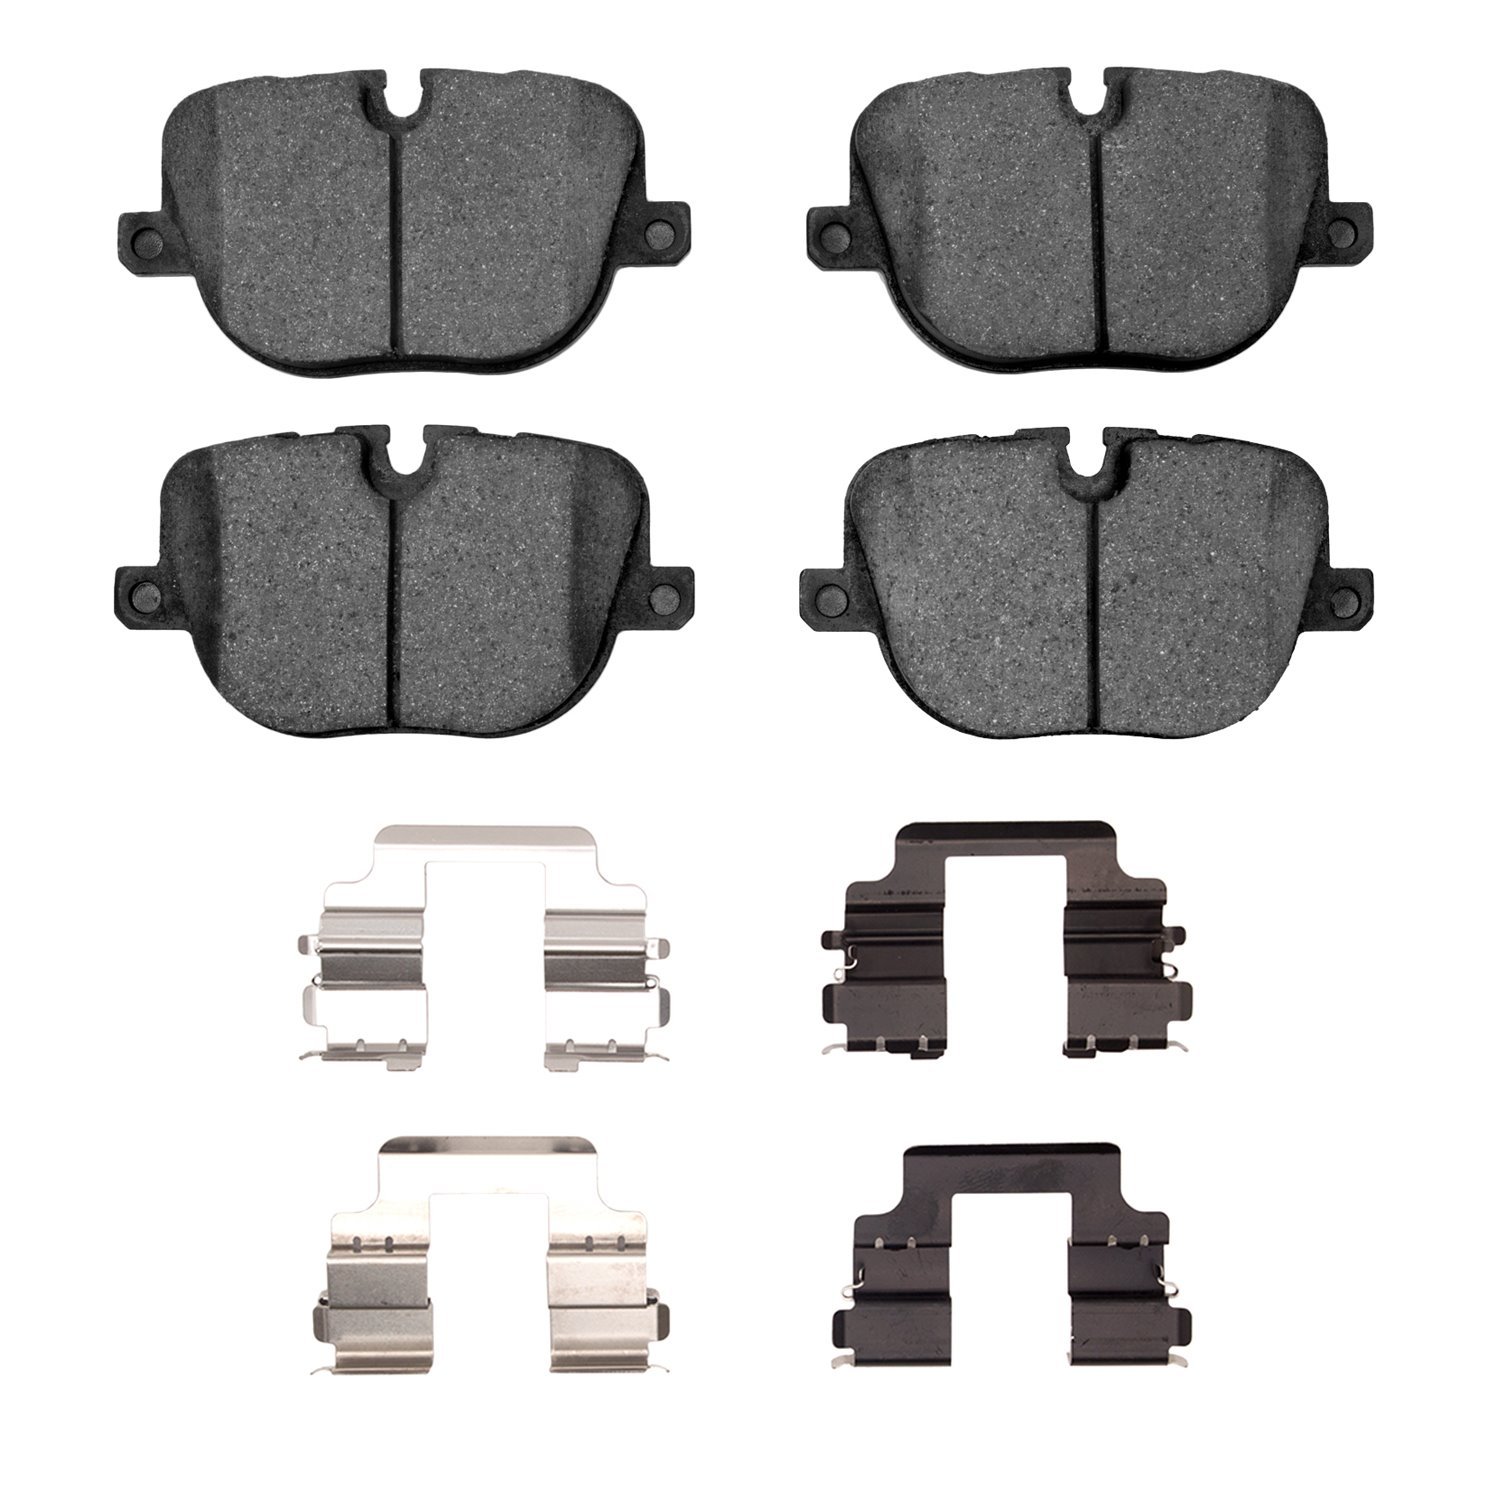 1310-1427-01 3000-Series Ceramic Brake Pads & Hardware Kit, 2010-2013 Land Rover, Position: Rear